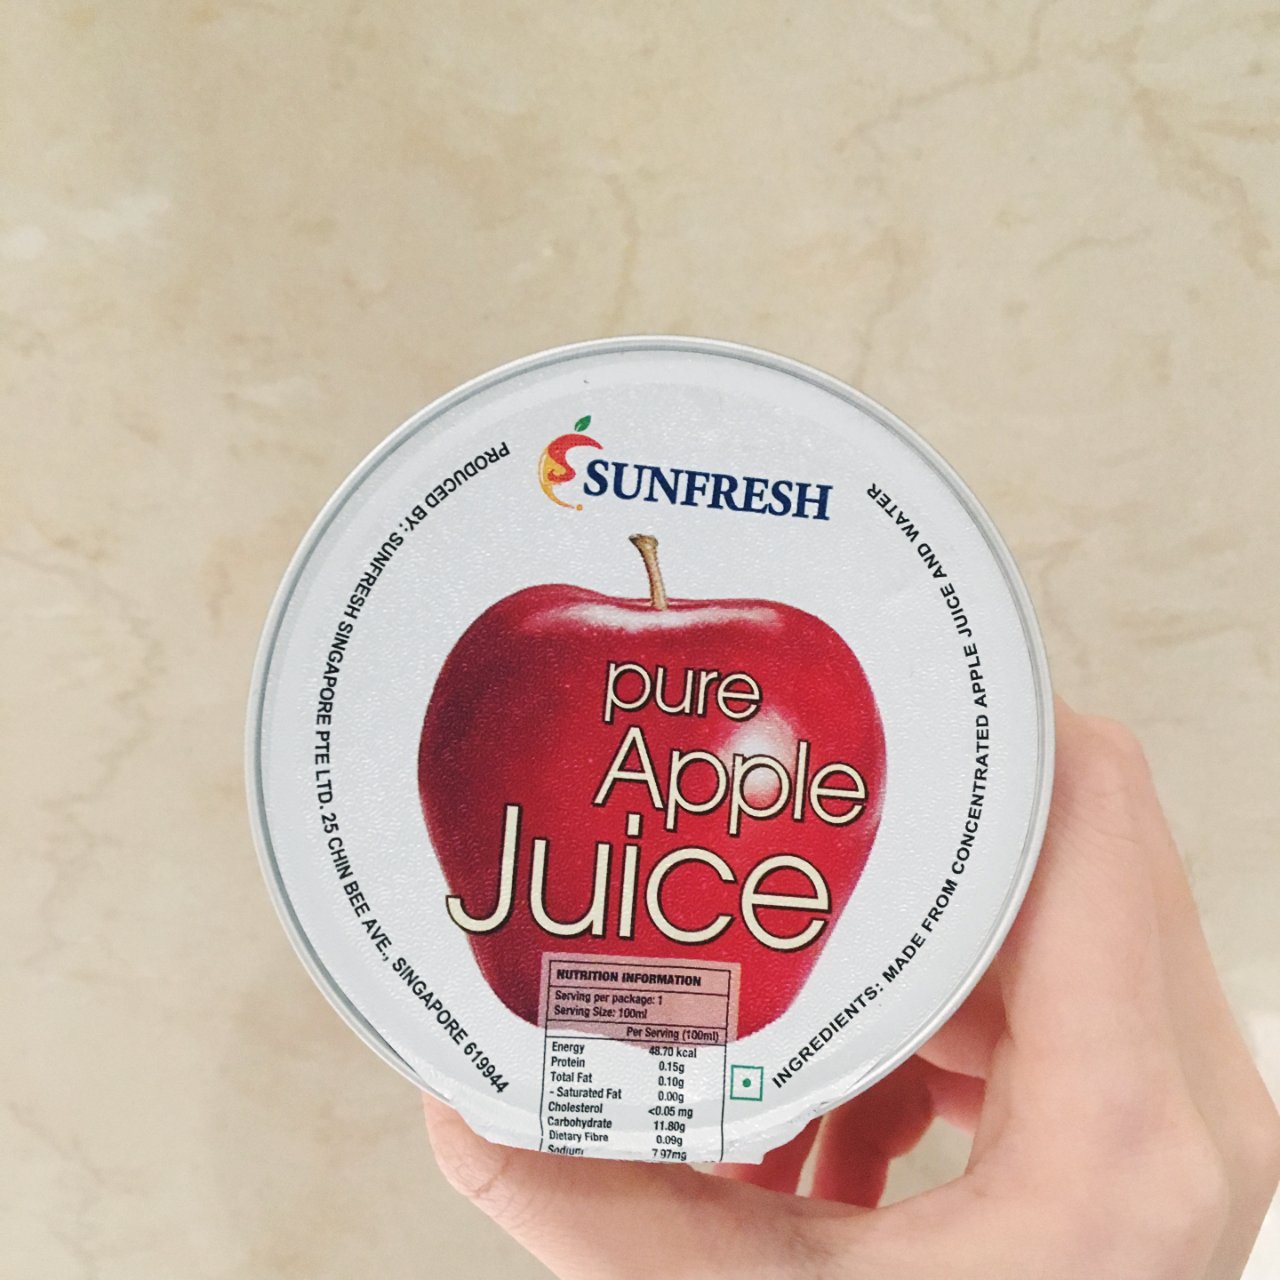 Sunfresh,苹果汁,Apple juice